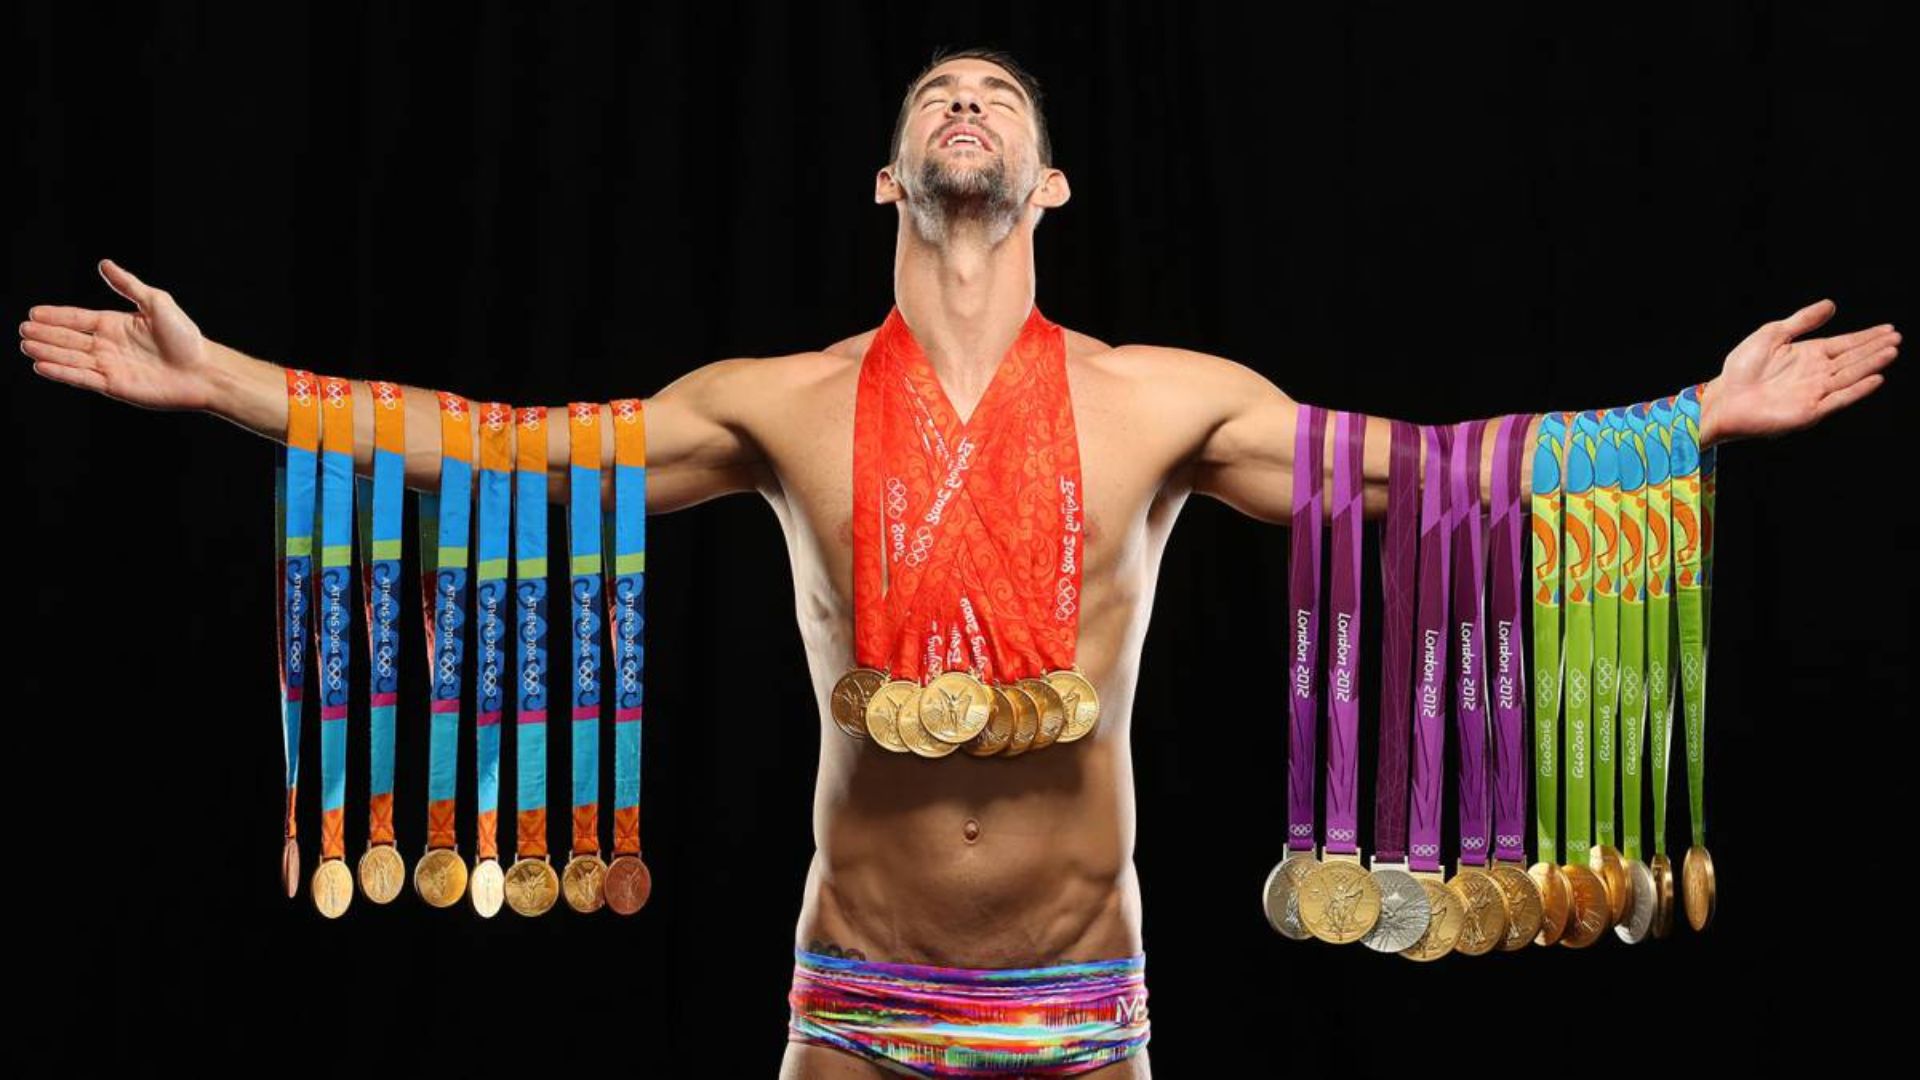 Intip Kekayaan Michael Phelps si “Manusia Ikan”